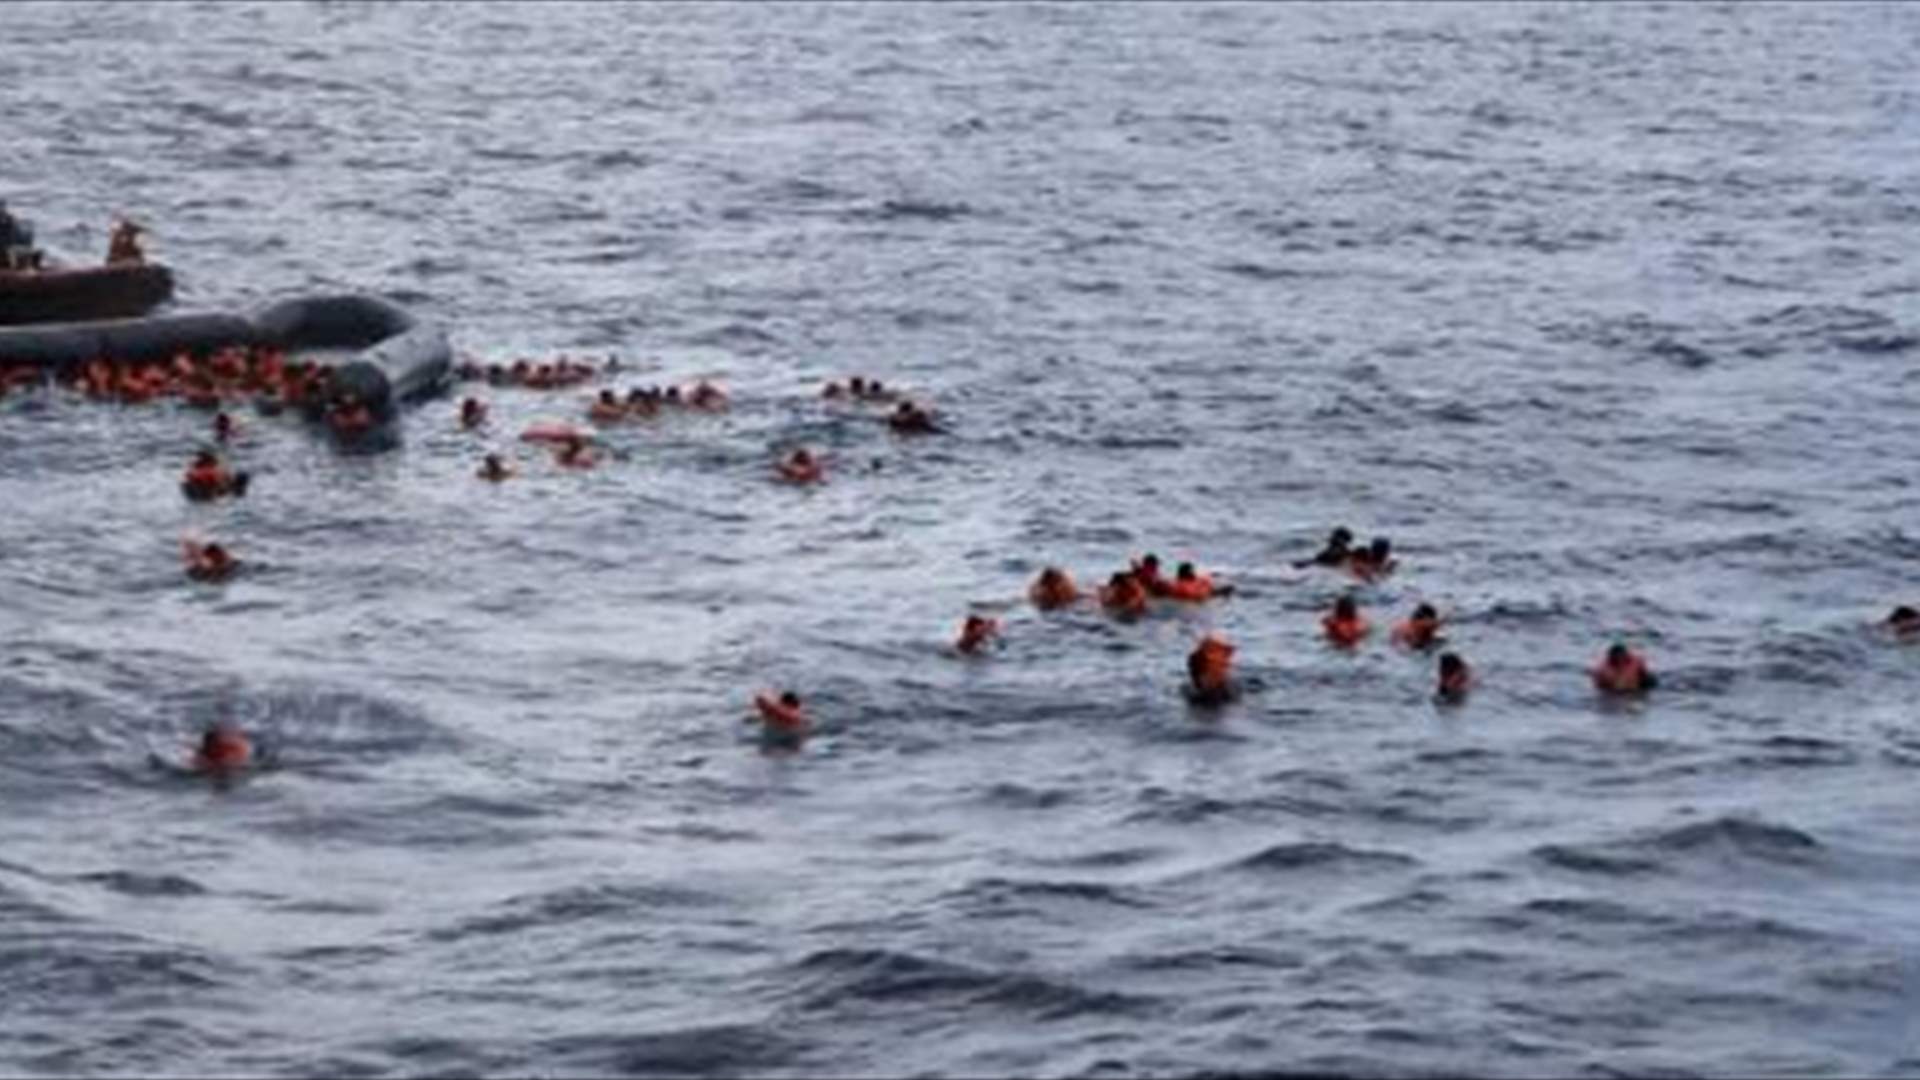 إنقاذ 95 مهاجرا وفقدان أربعة قبالة الساحل الليبي